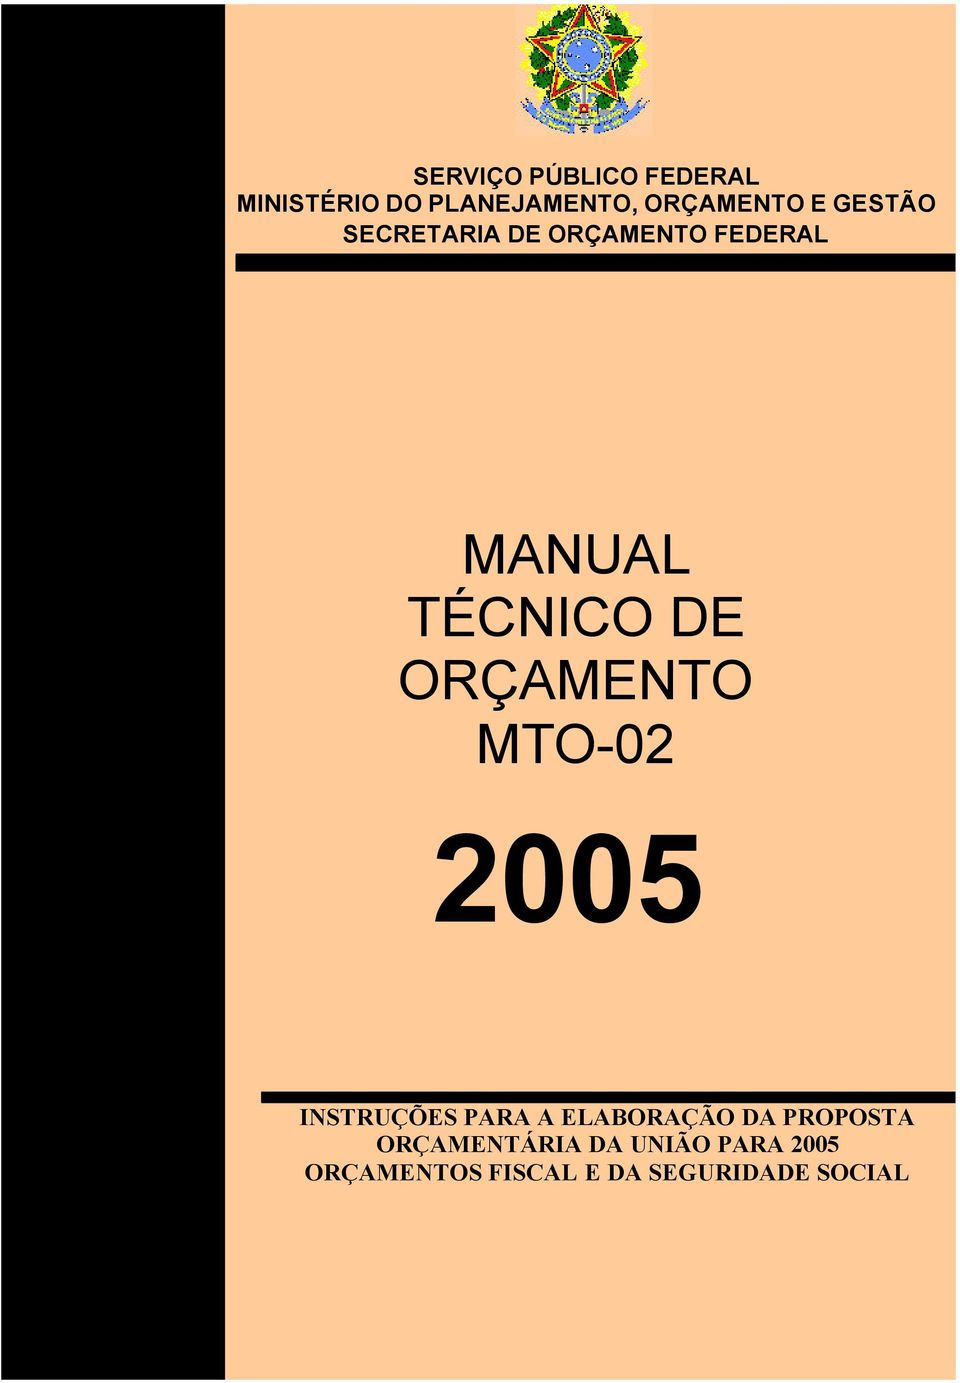 ORÇAMENTO MTO-02 2005 INSTRUÇÕES PARA A ELABORAÇÃO DA PROPOSTA